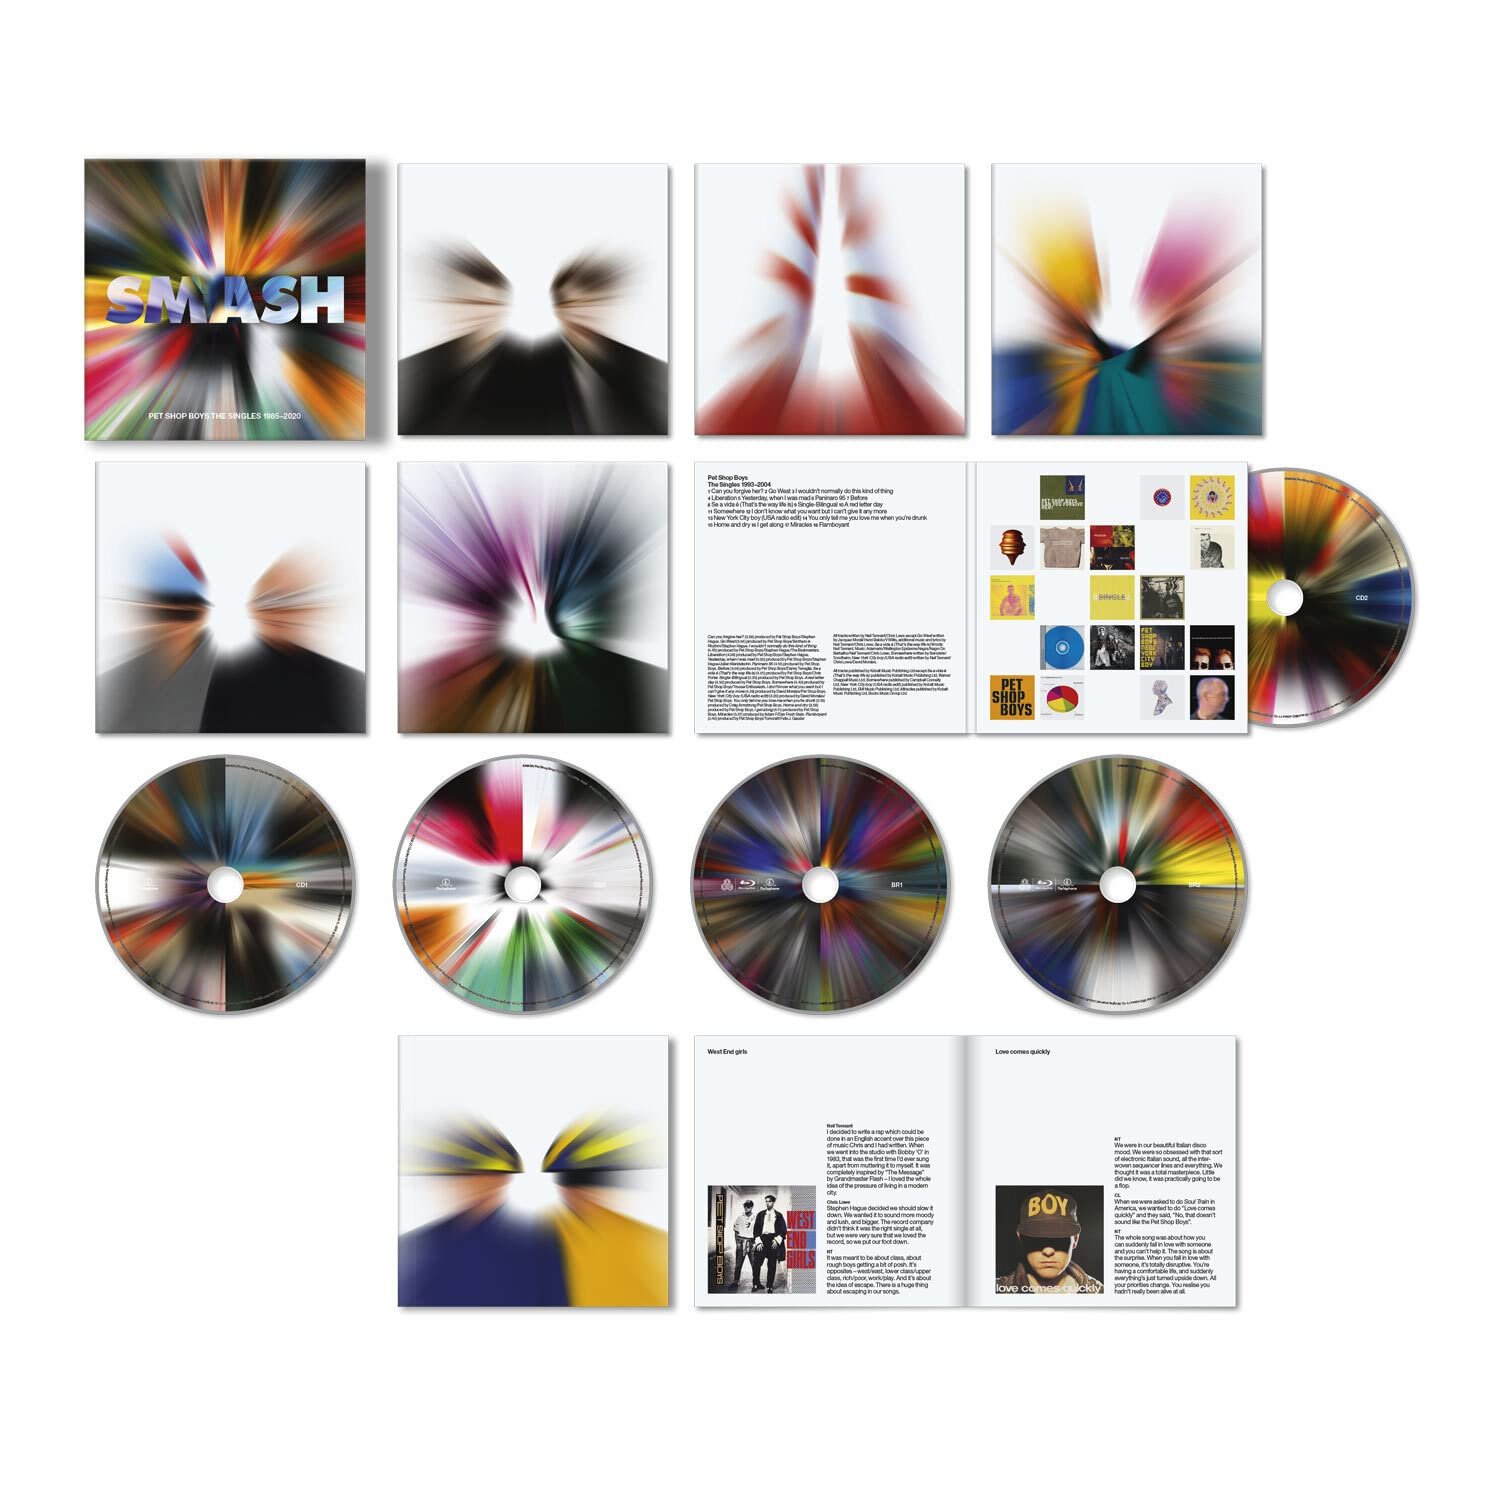 ファッションアイテムを 【超貴重】Pet Shop Boys CD x 2sets | www